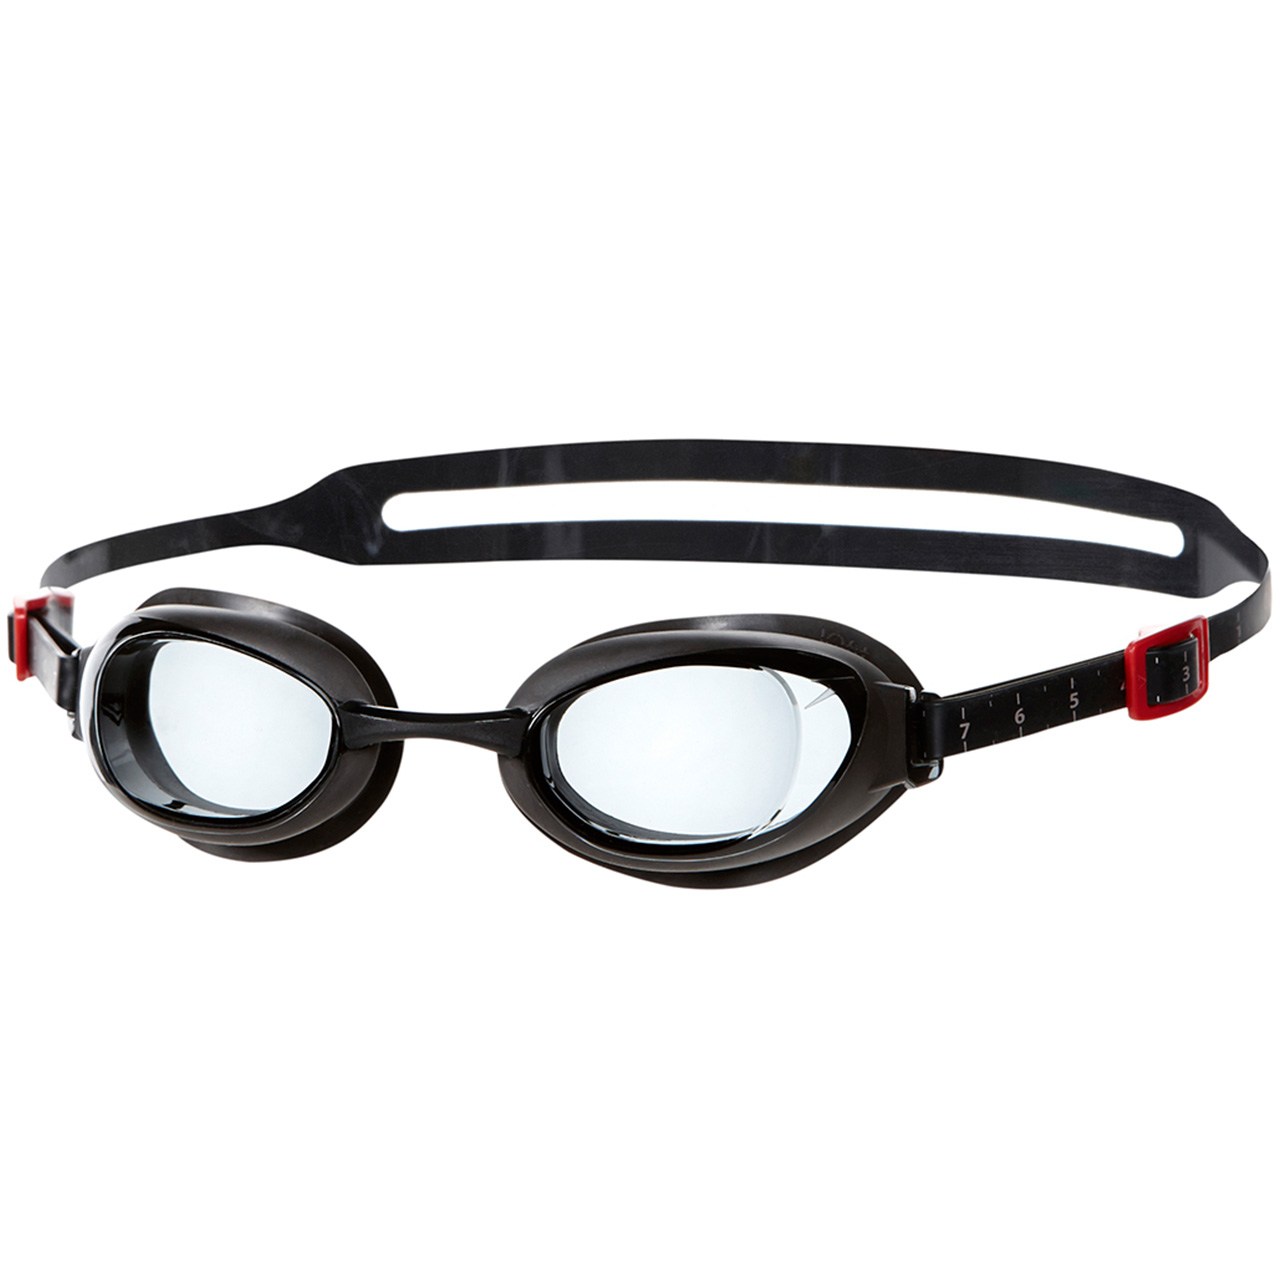 عینک شنای اسپیدو مدل Aquapure Prescription سایز 1.5